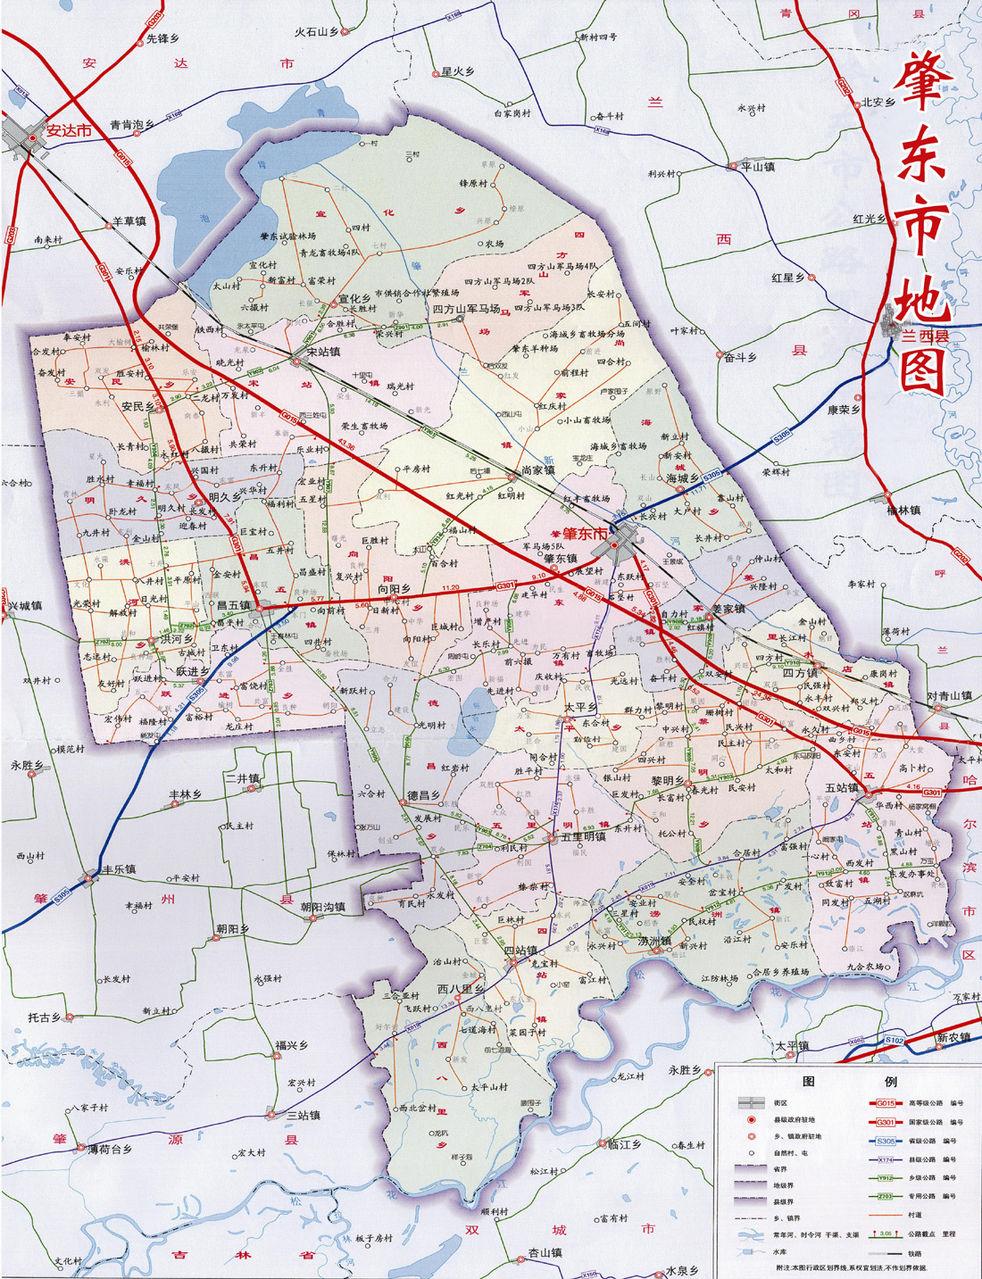 全部版本 历史版本     肇东市位于   黑龙江省西南部   松嫩平原中部